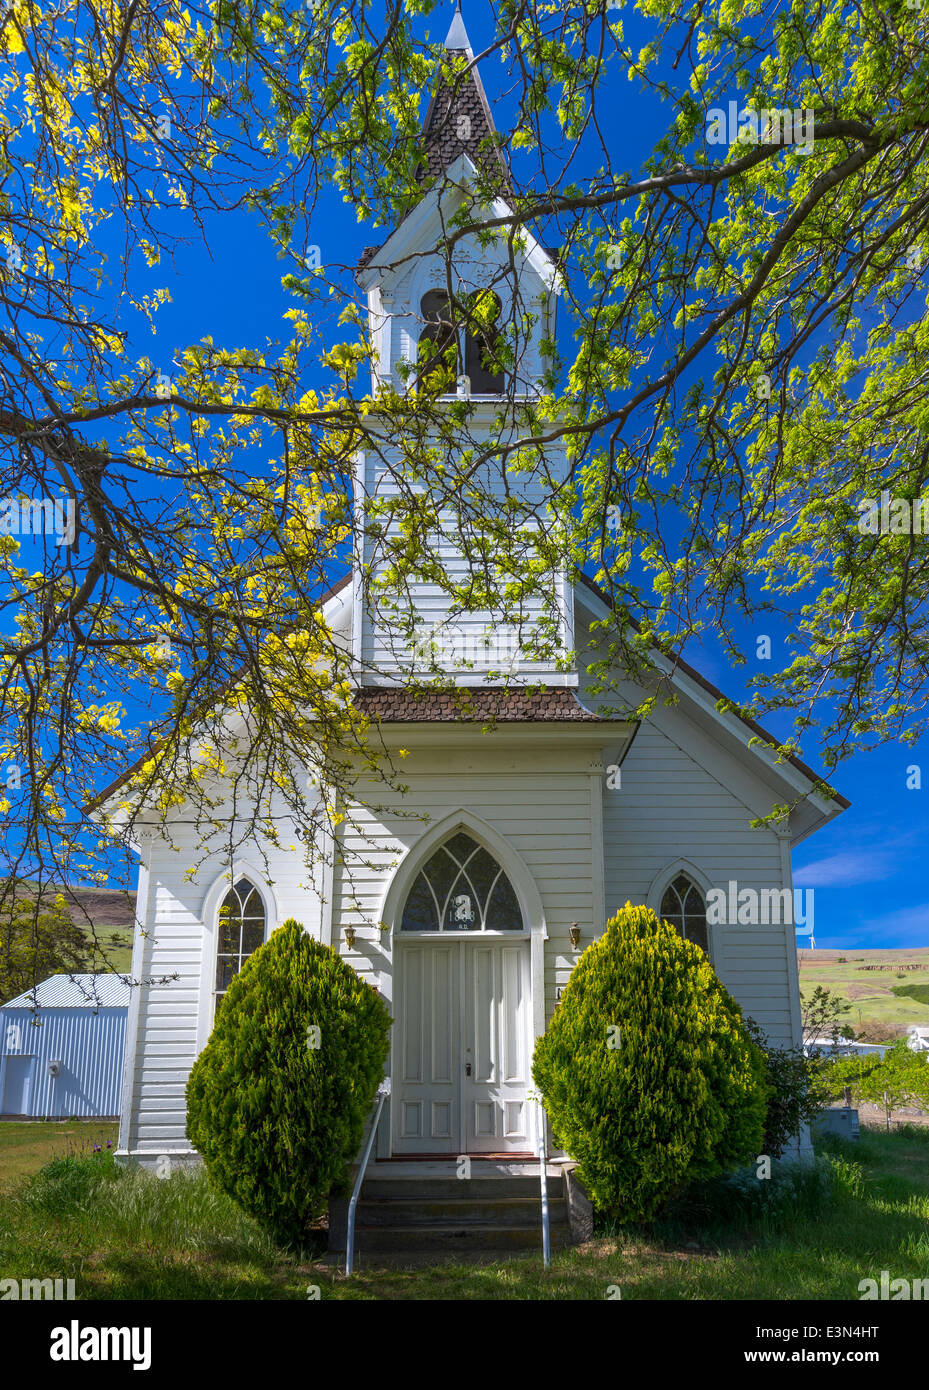 Maryhill, Washington: Maryhill Community Church, 1888, with spring trees Stock Photo